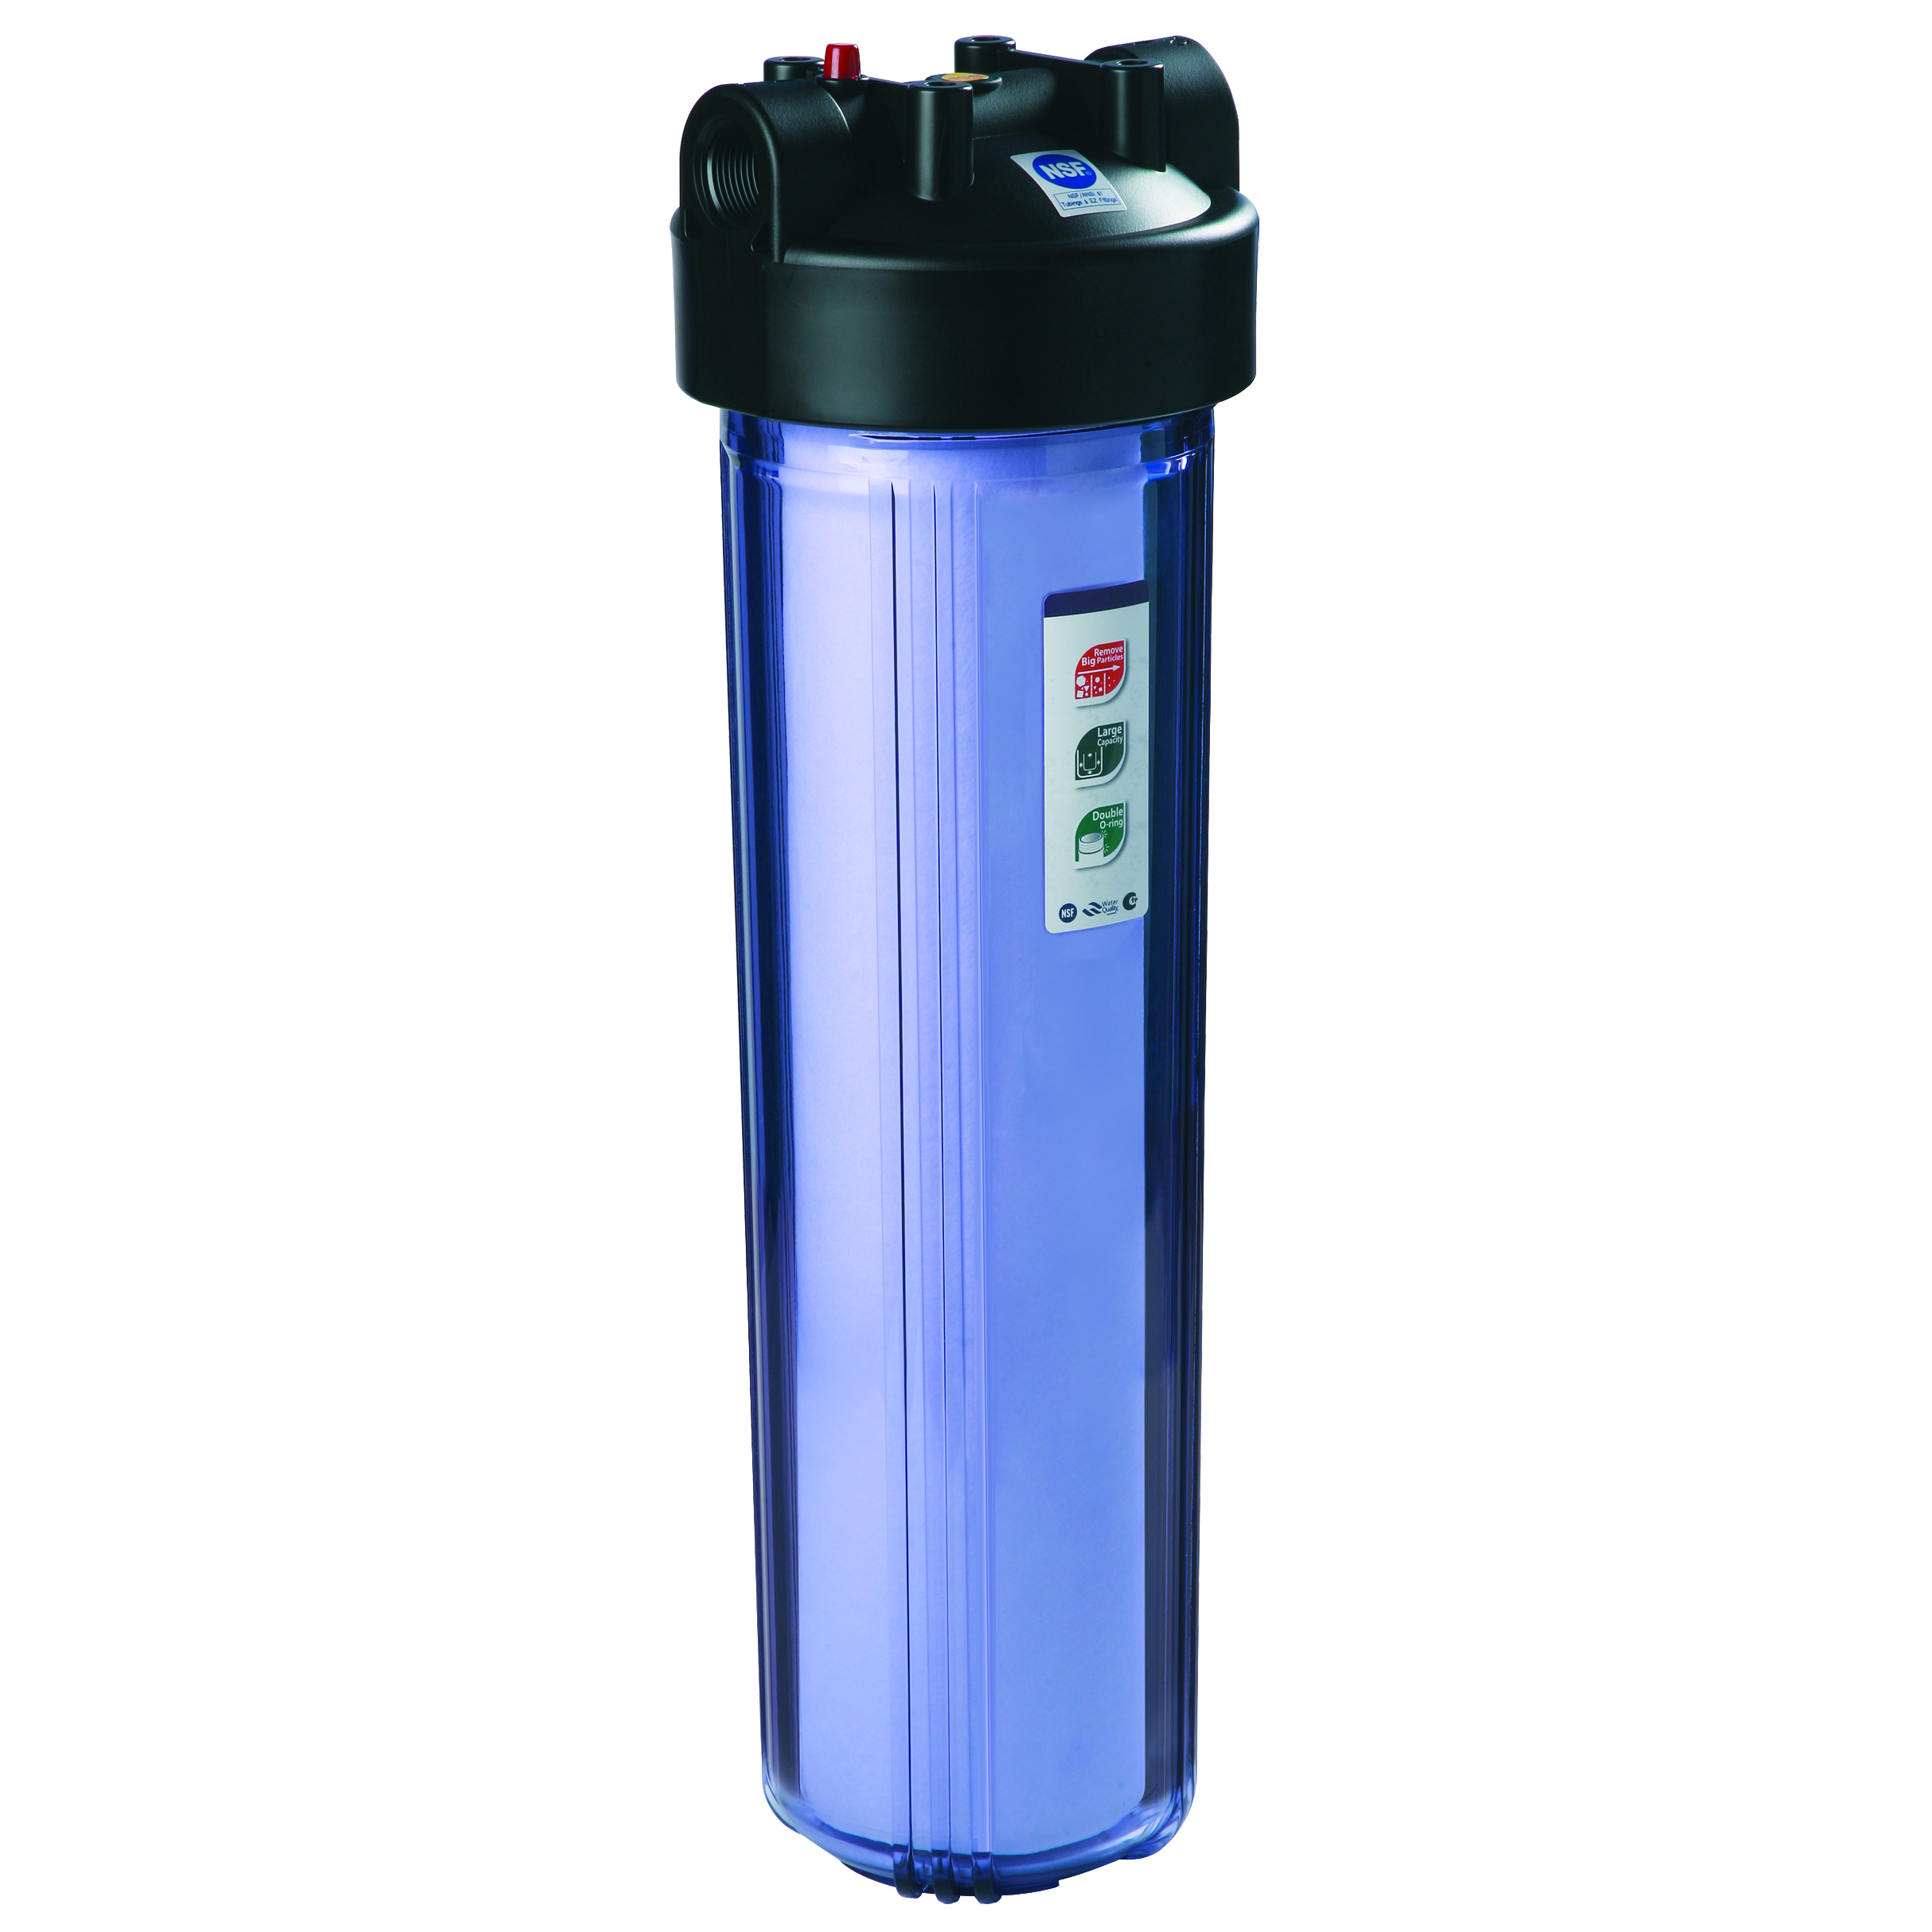 Корпус для фильтра очистки воды. Фильтр магистральный RAIFIL ps897-bk1-PR-С. RAIFIL 20bb PS 898-bk1-PR-C. 20bb PS 898-bk1-PR-C. Фильтр для воды Биг Блю 20.